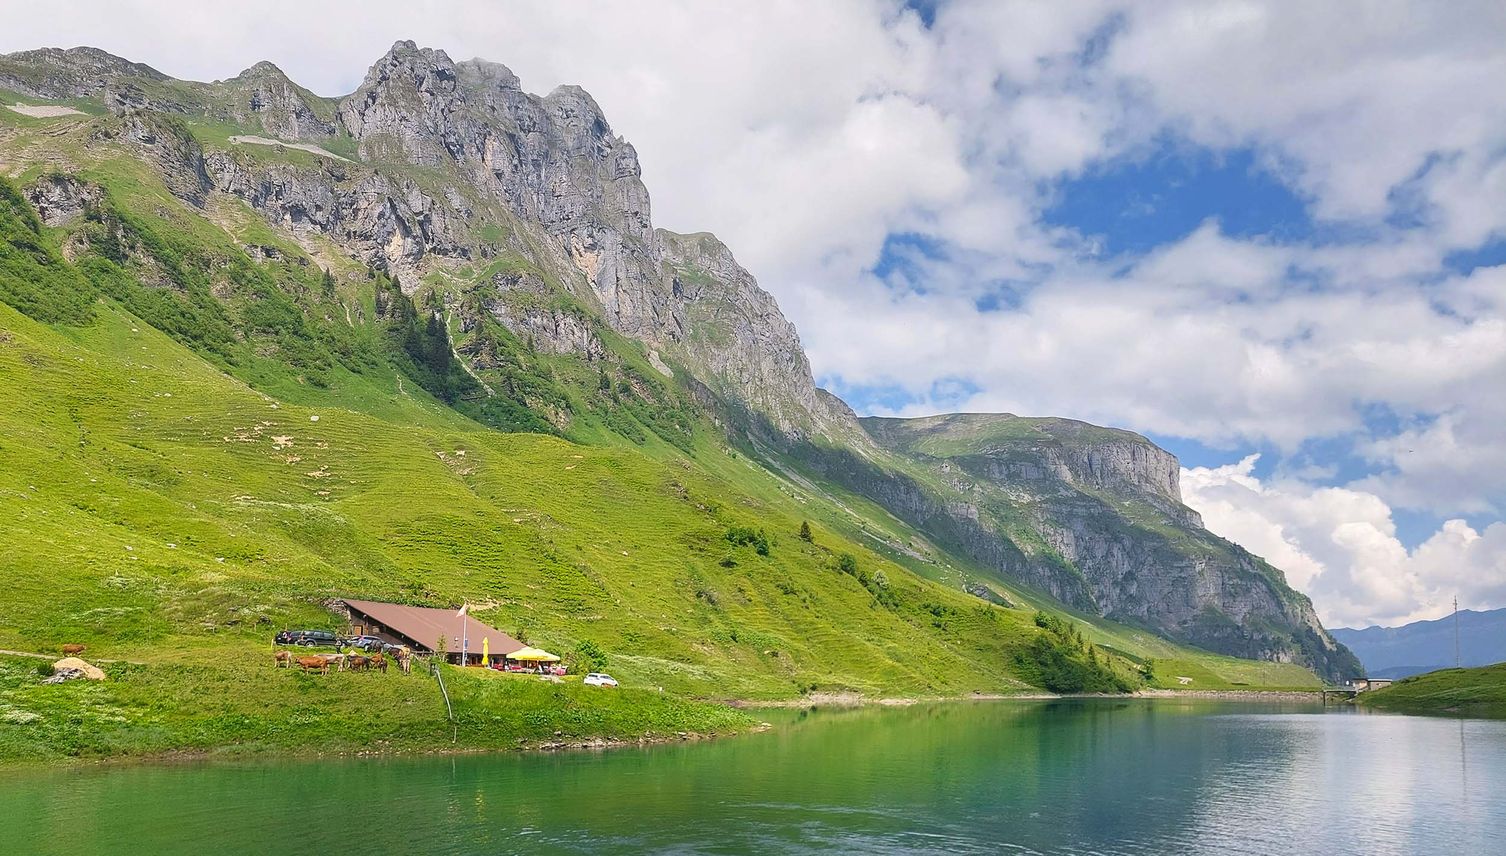 Hier geht es zu den schönsten Bergseen der Zentralschweiz